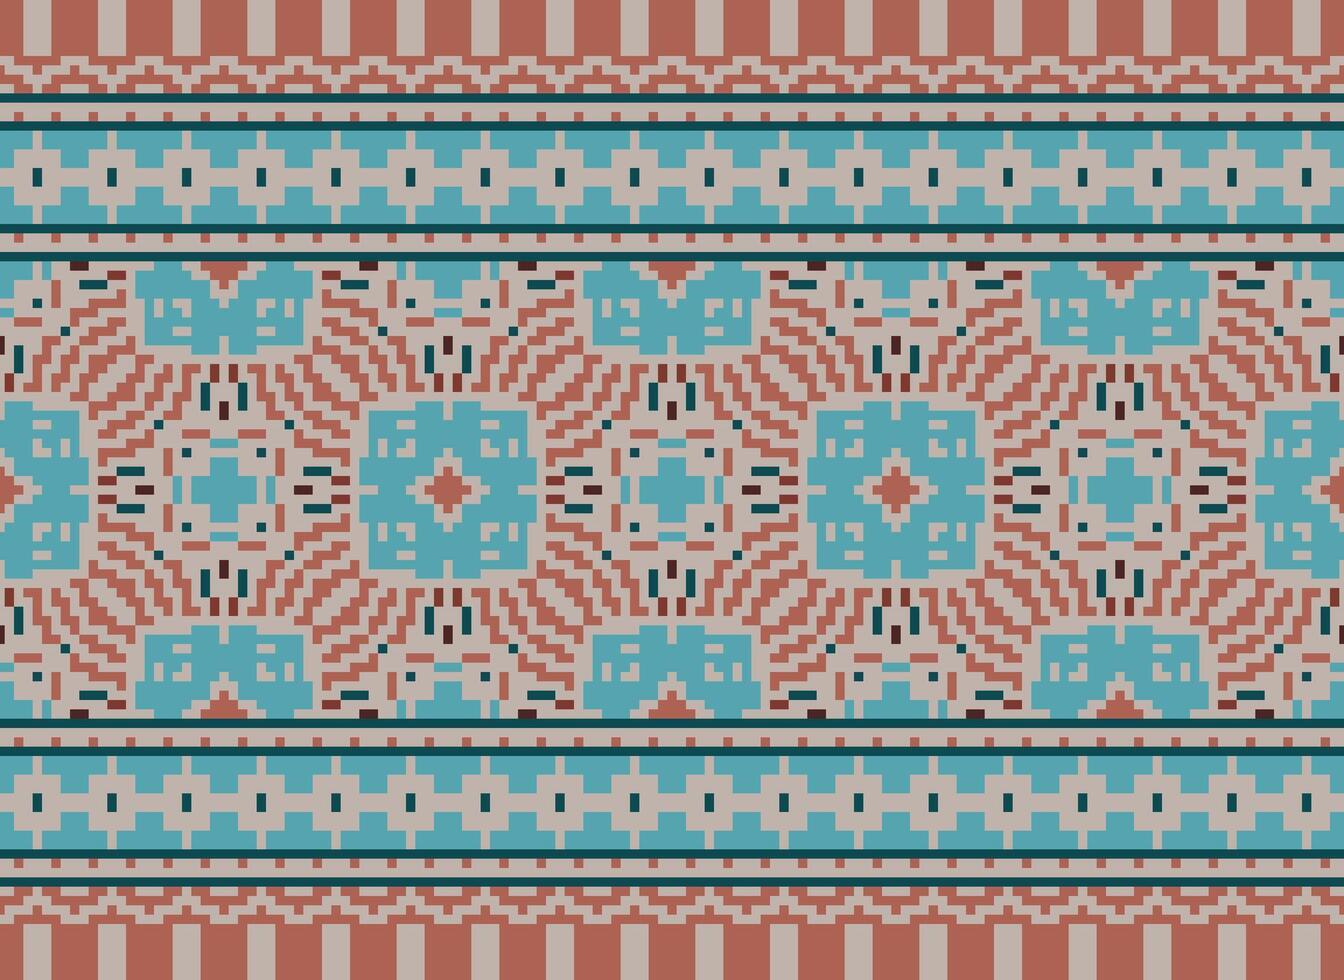 bloemen kruis steek borduurwerk.geometrisch etnisch oosters naadloos patroon traditioneel achtergrond.aztec stijl abstract vector illustratie.ontwerp voor textuur, stof, kleding, verpakking, decoratie, print.